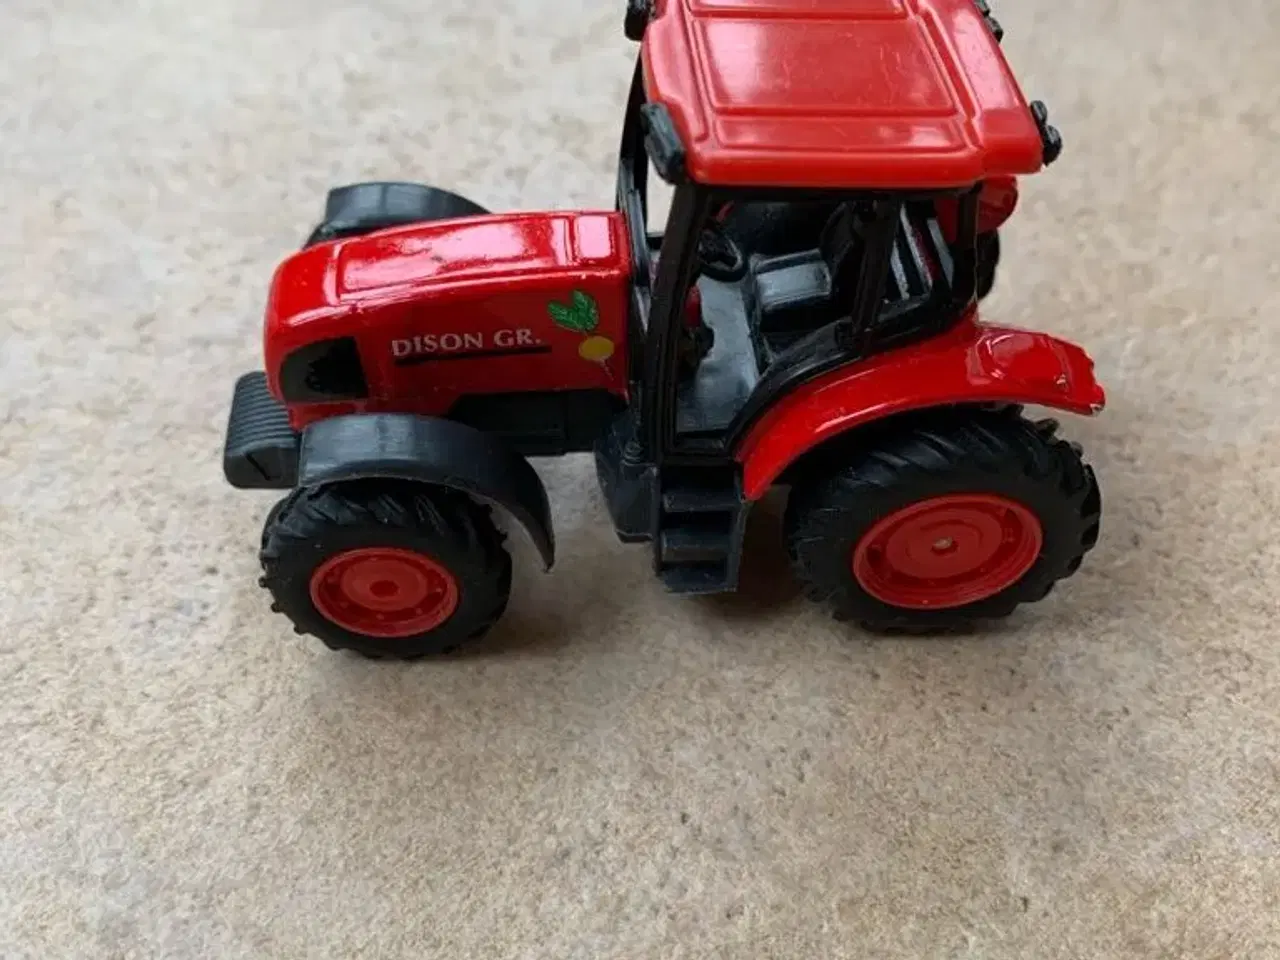 Billede 1 - Dison GR. Traktor i rød